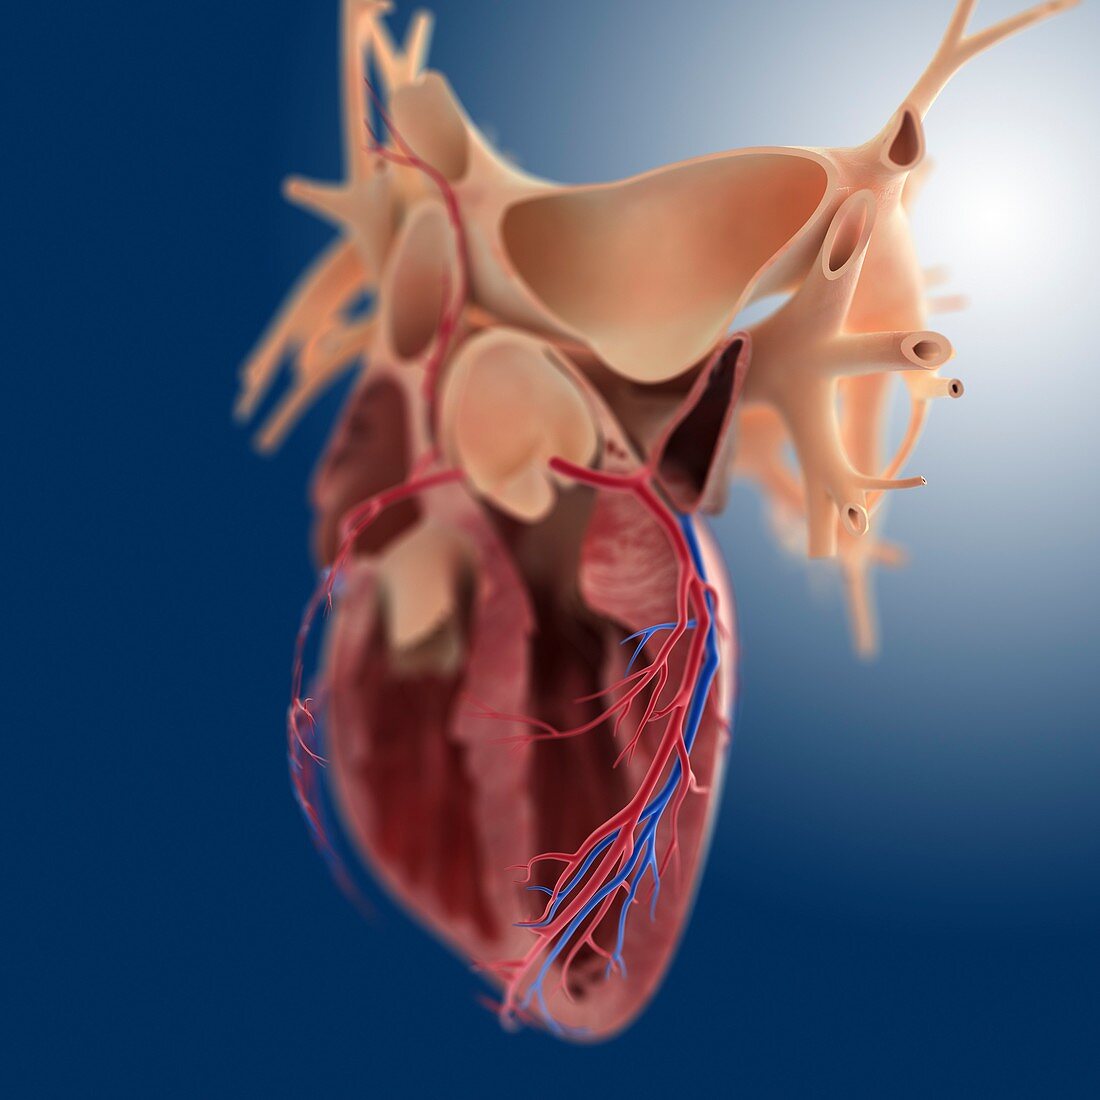 Heart's coronary blood vessels,artwork